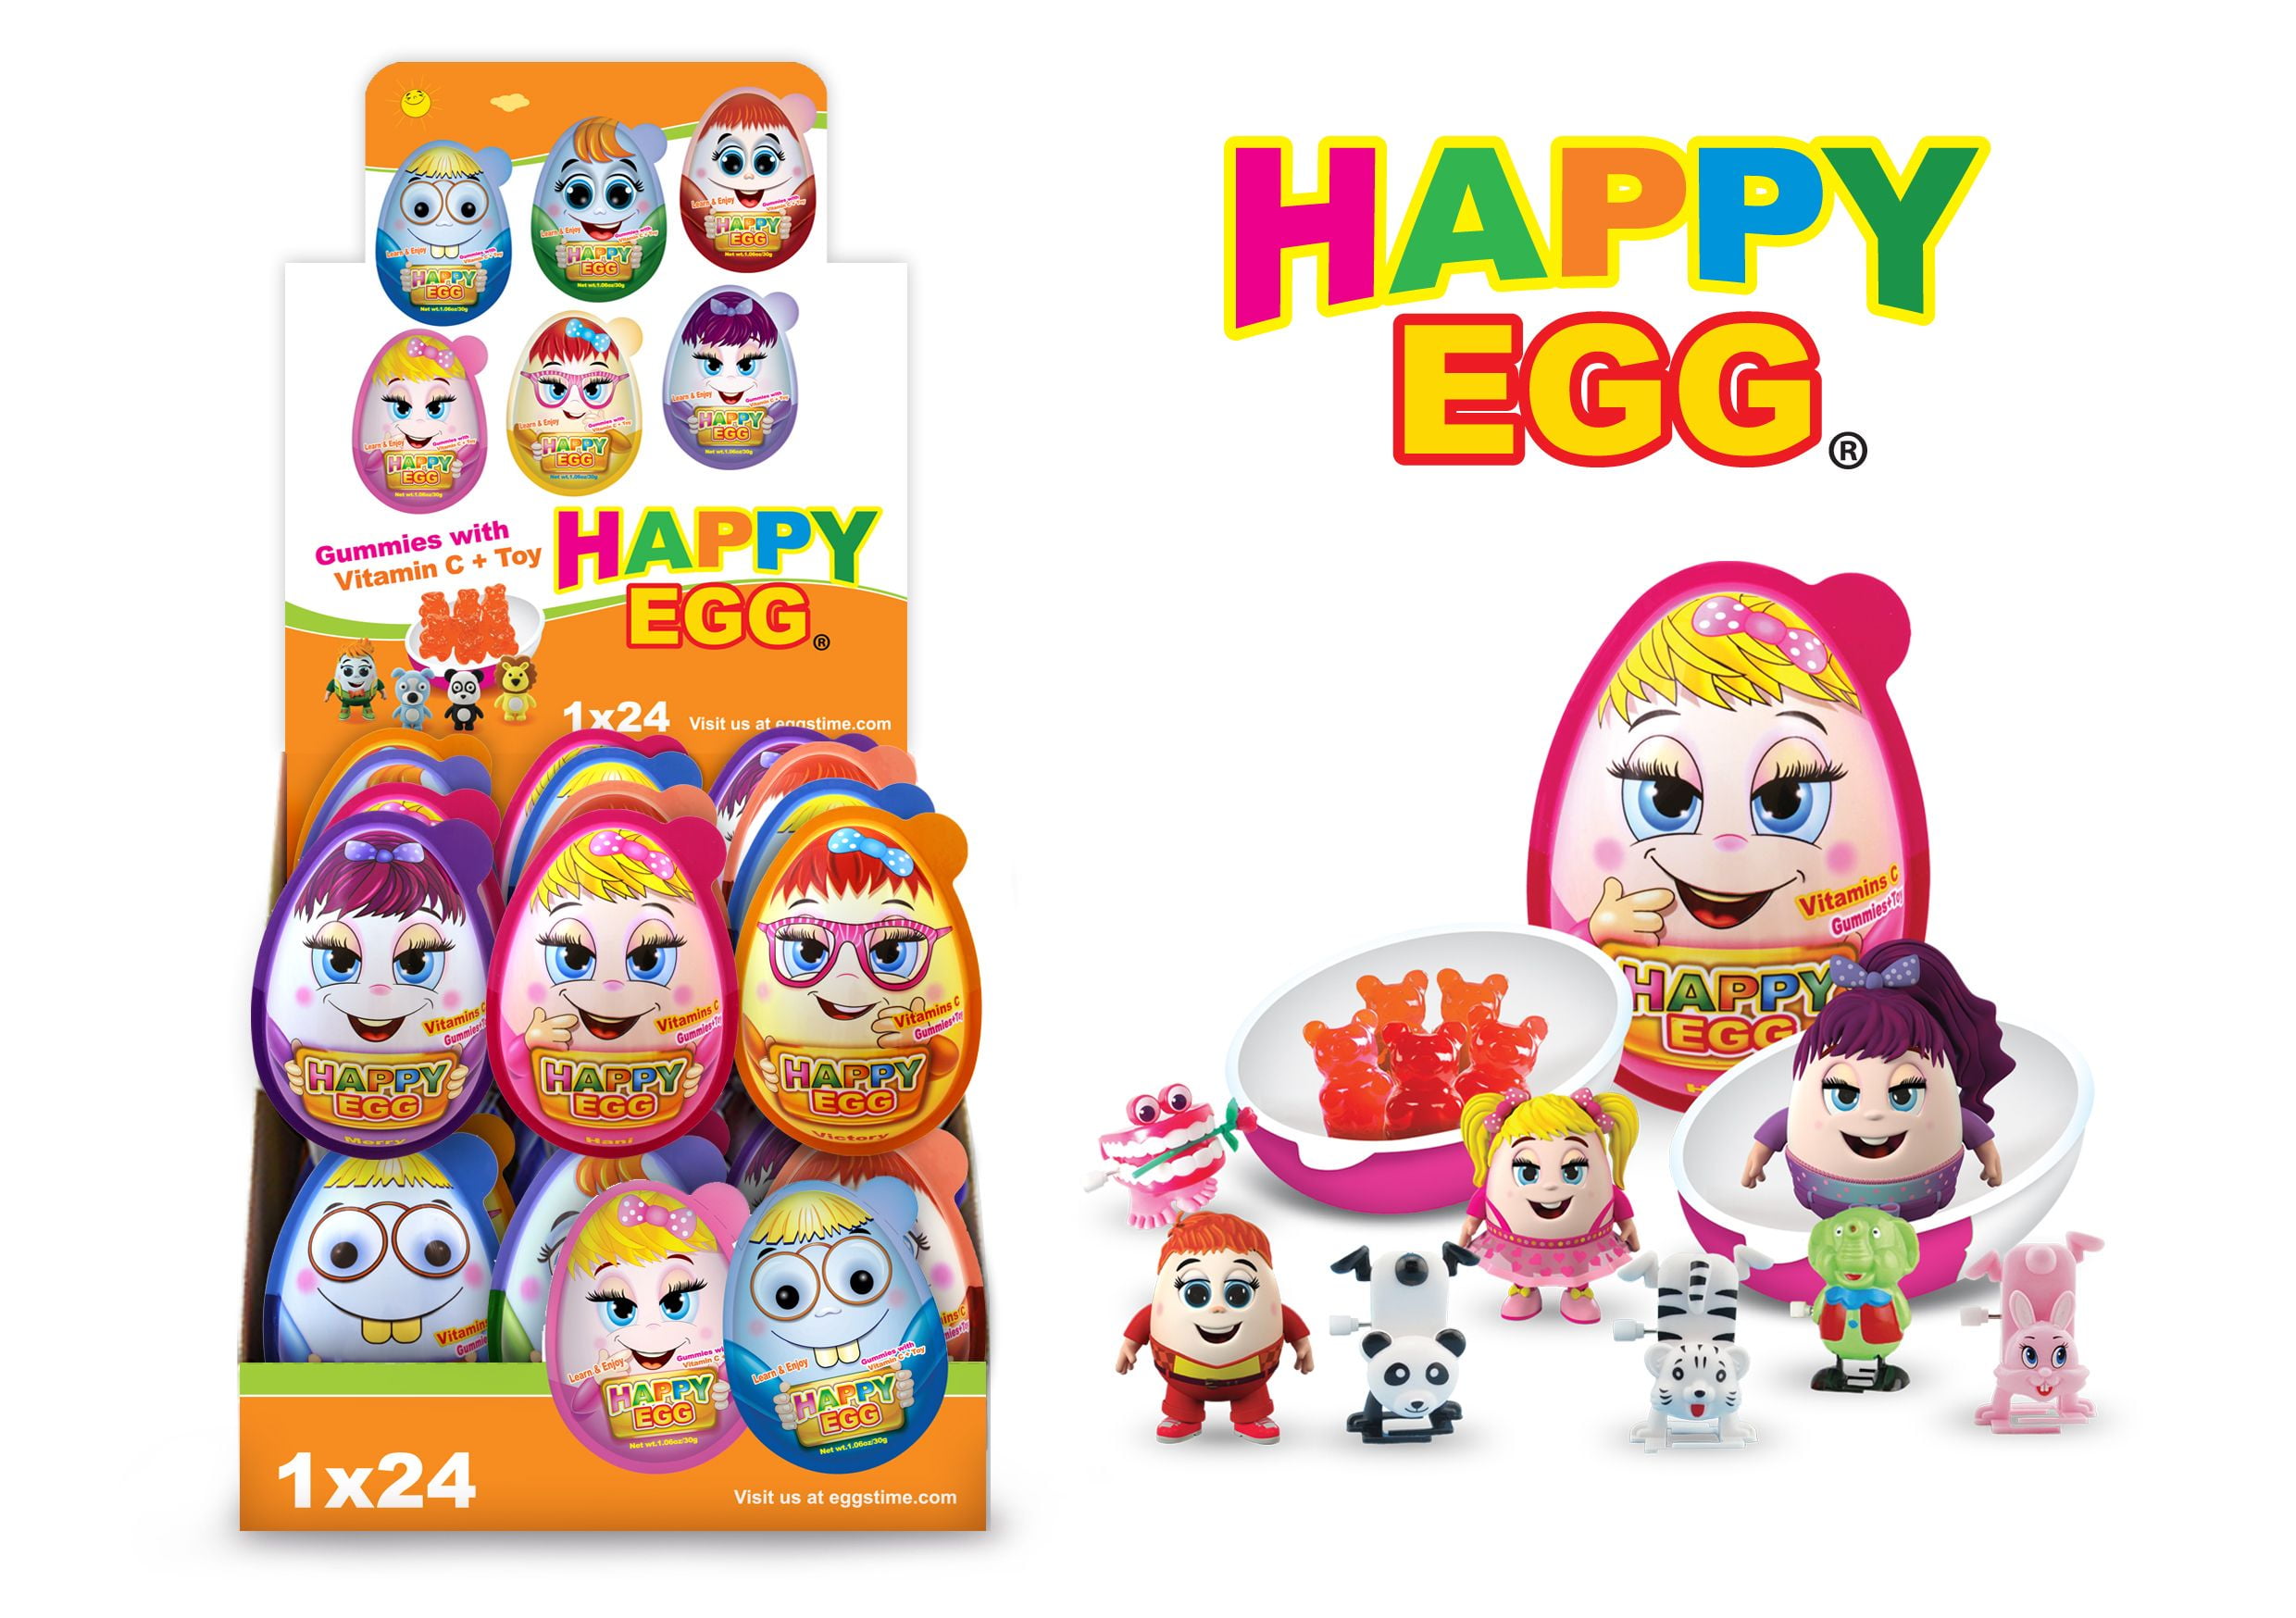 Happy Egg Giant pack of 3eggs 